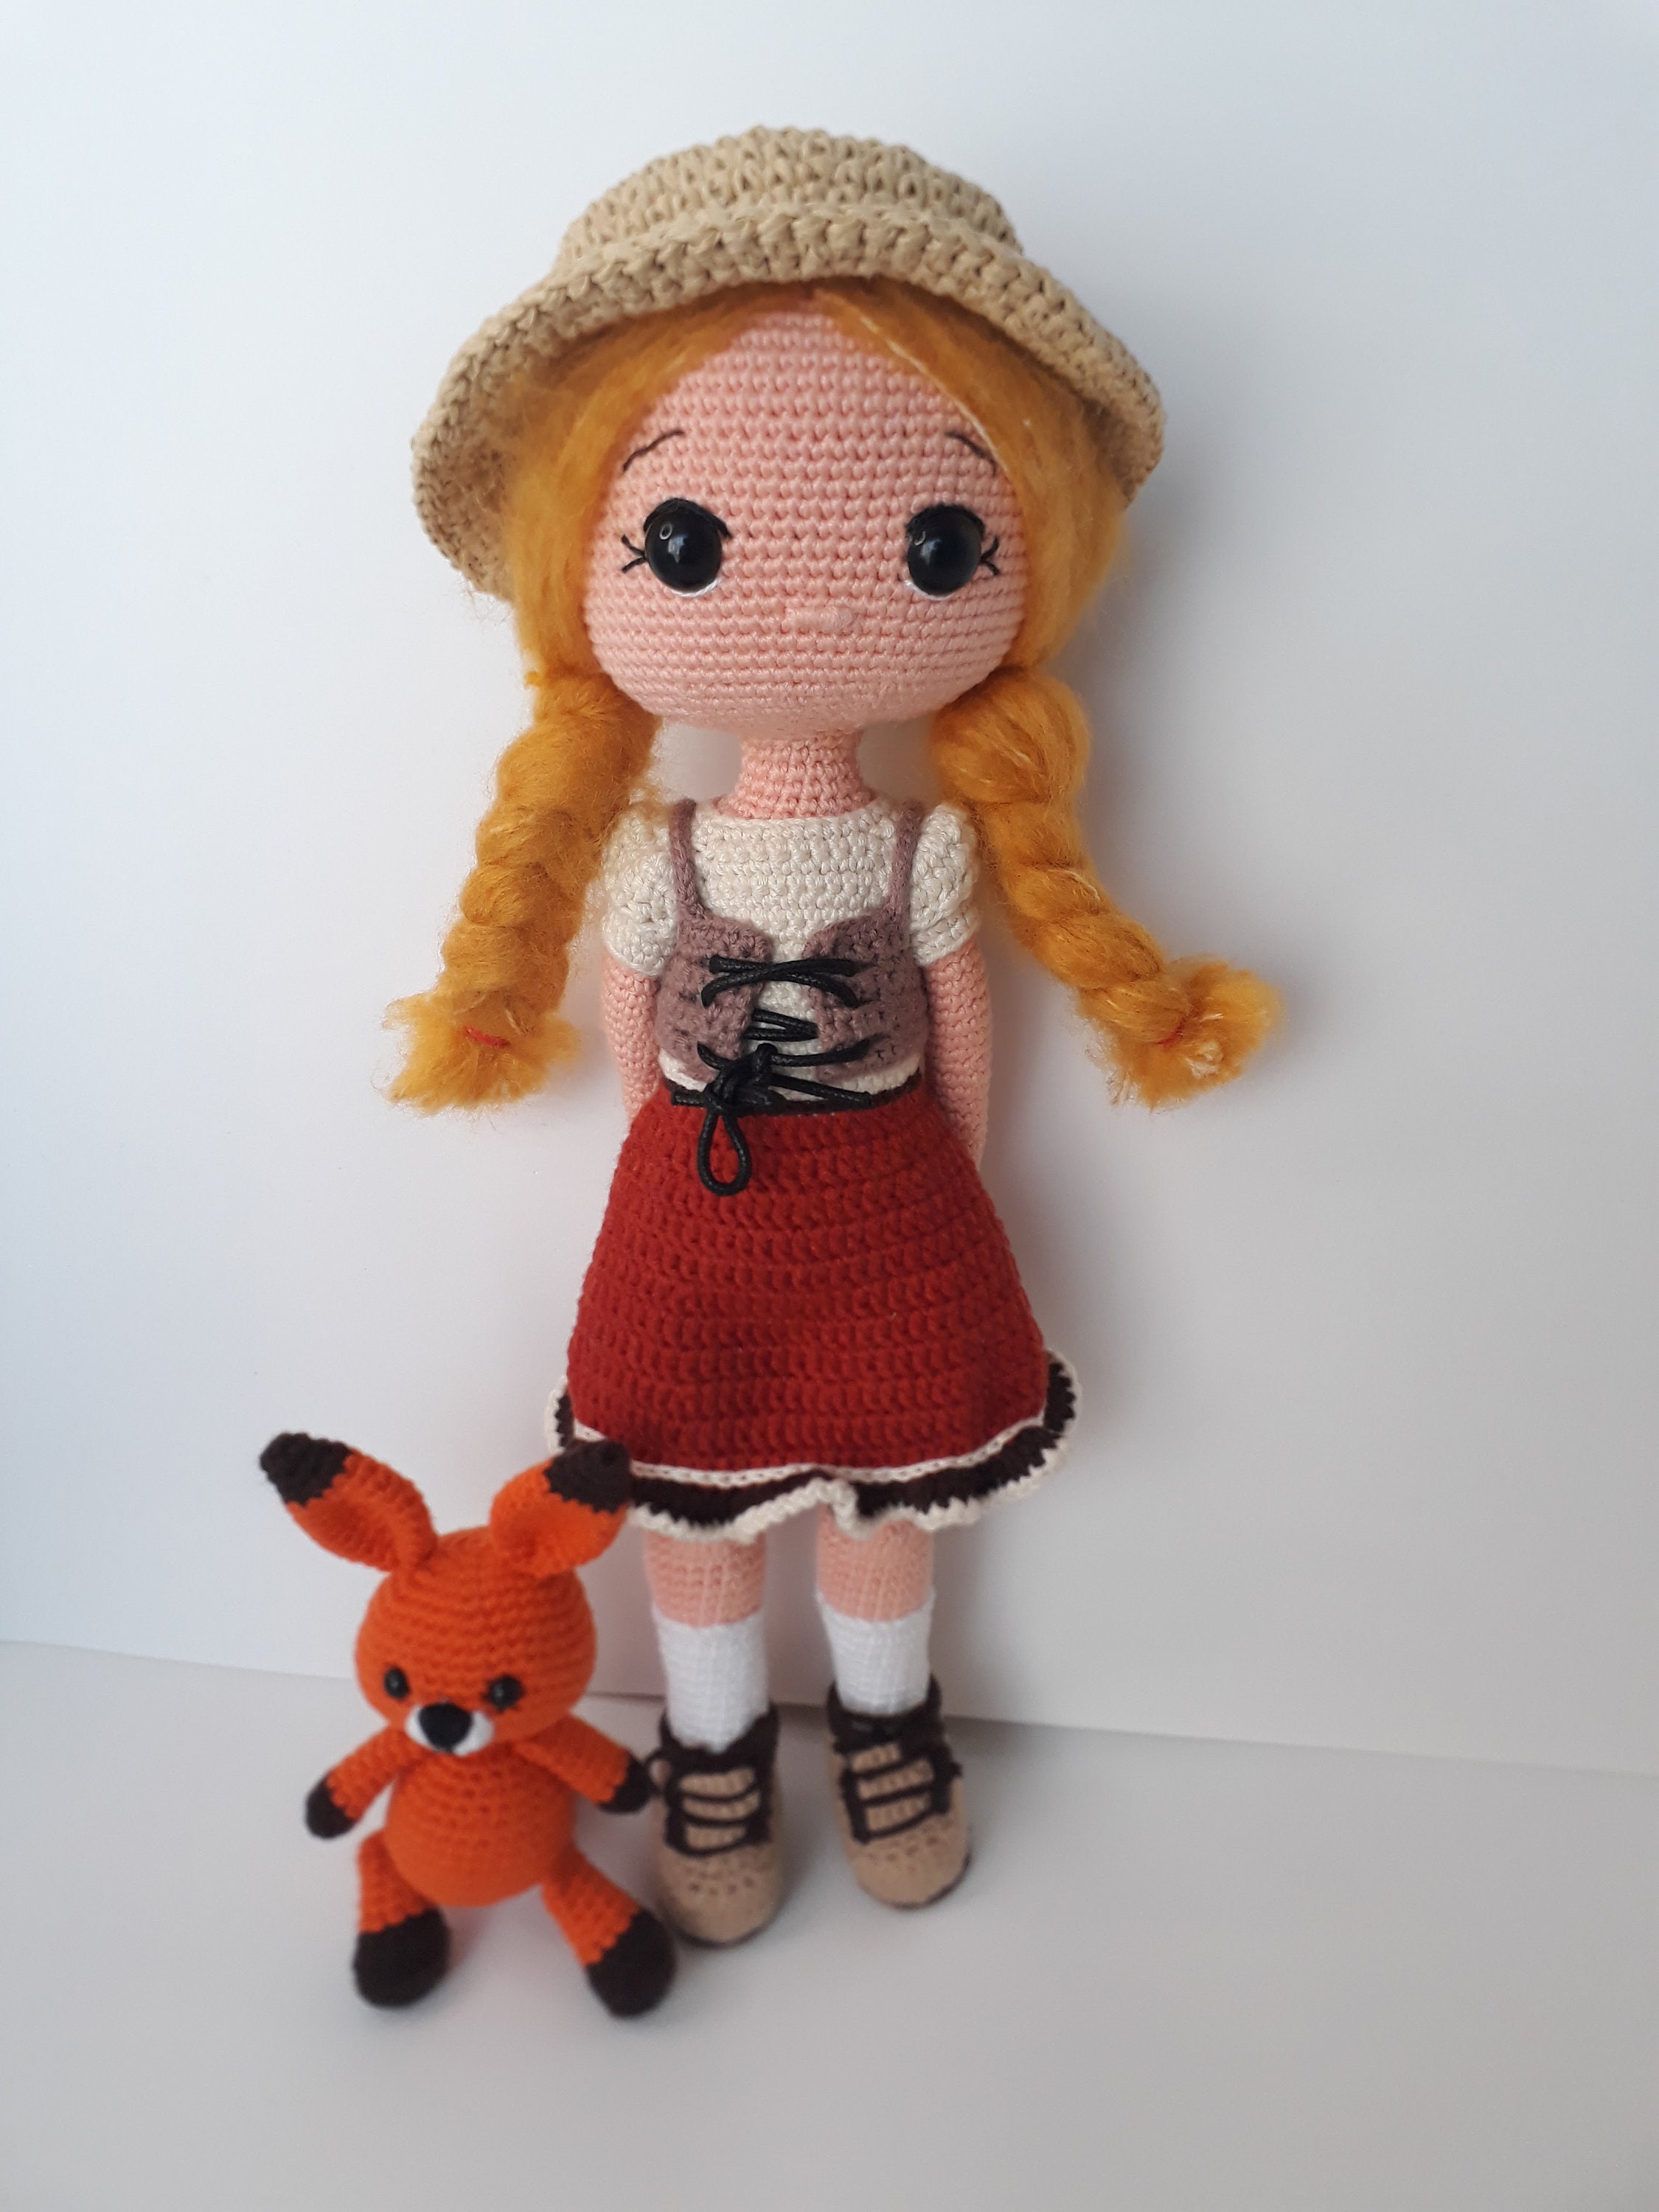 AMARYLS Crochet Doll Pattern / Amigurumi Doll Pattern / ENGLISH / FRANCE 